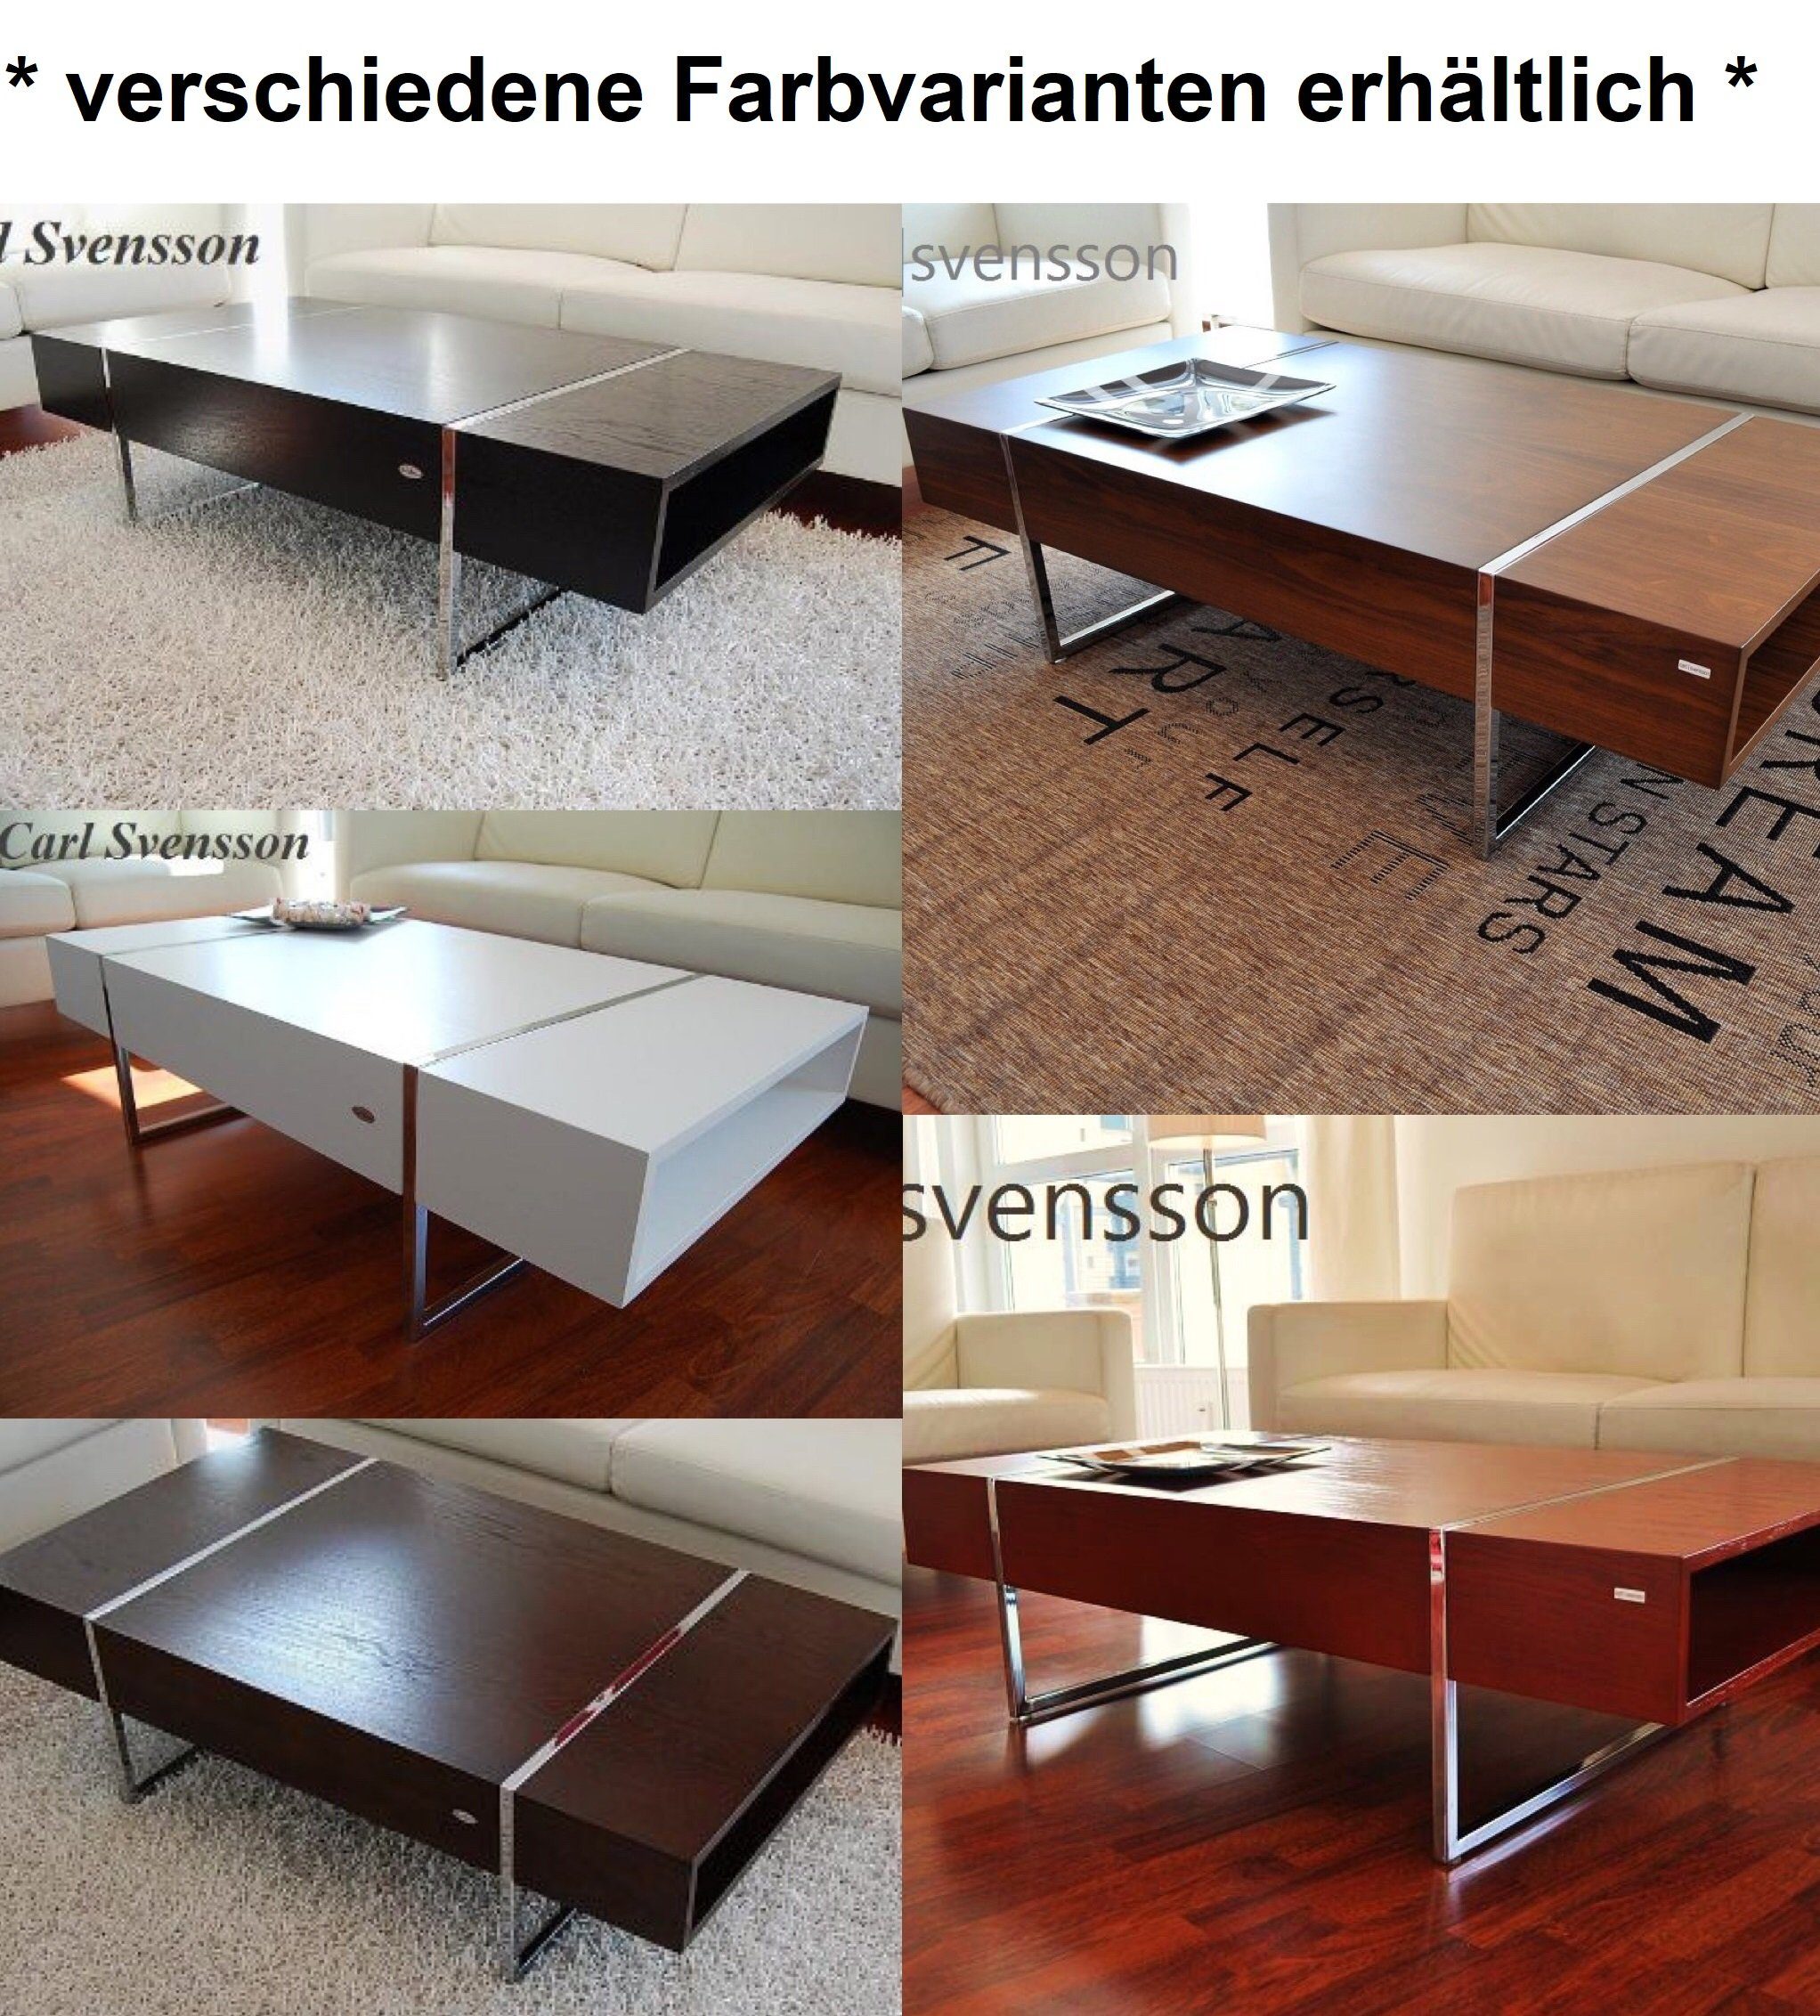 Tisch svensson Svensson carl Chrom Design Couchtisch Carl N-111 Couchtisch Schwarz